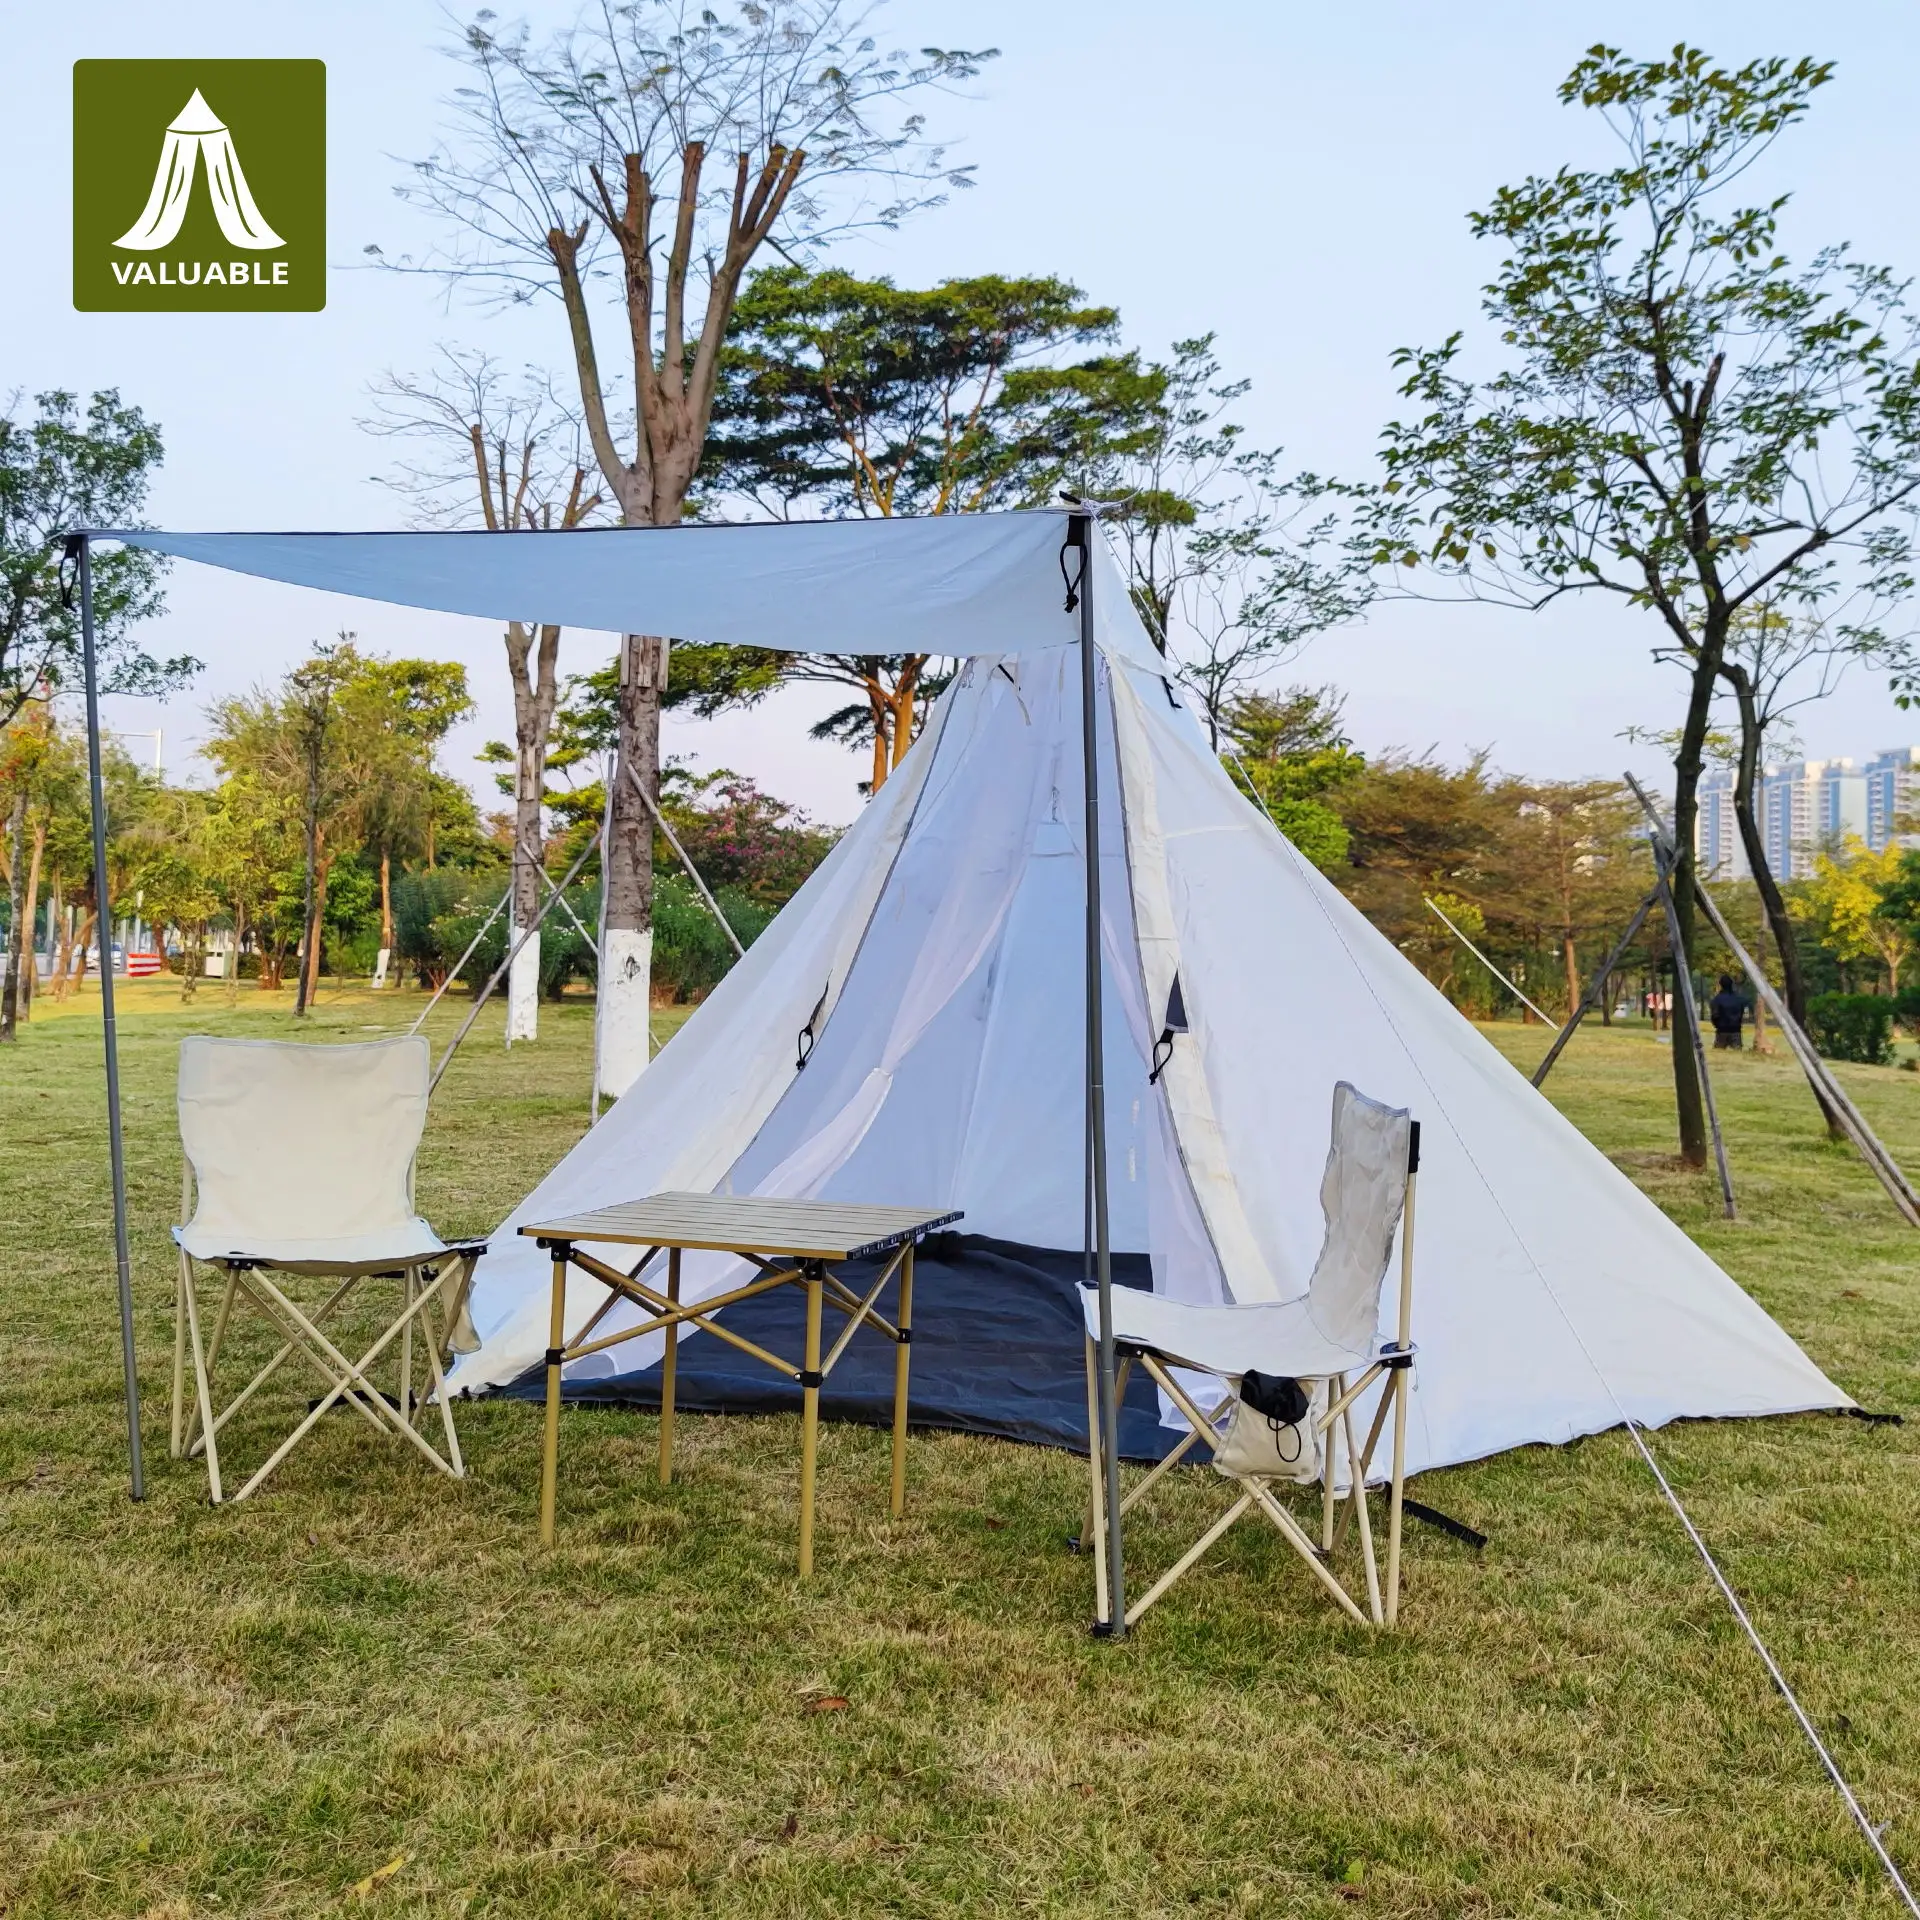 Tente pyramidale hexagonale, camping en plein air voyage pique-nique protection solaire étanche anti-moustique anti-insecte ventilé et respirant